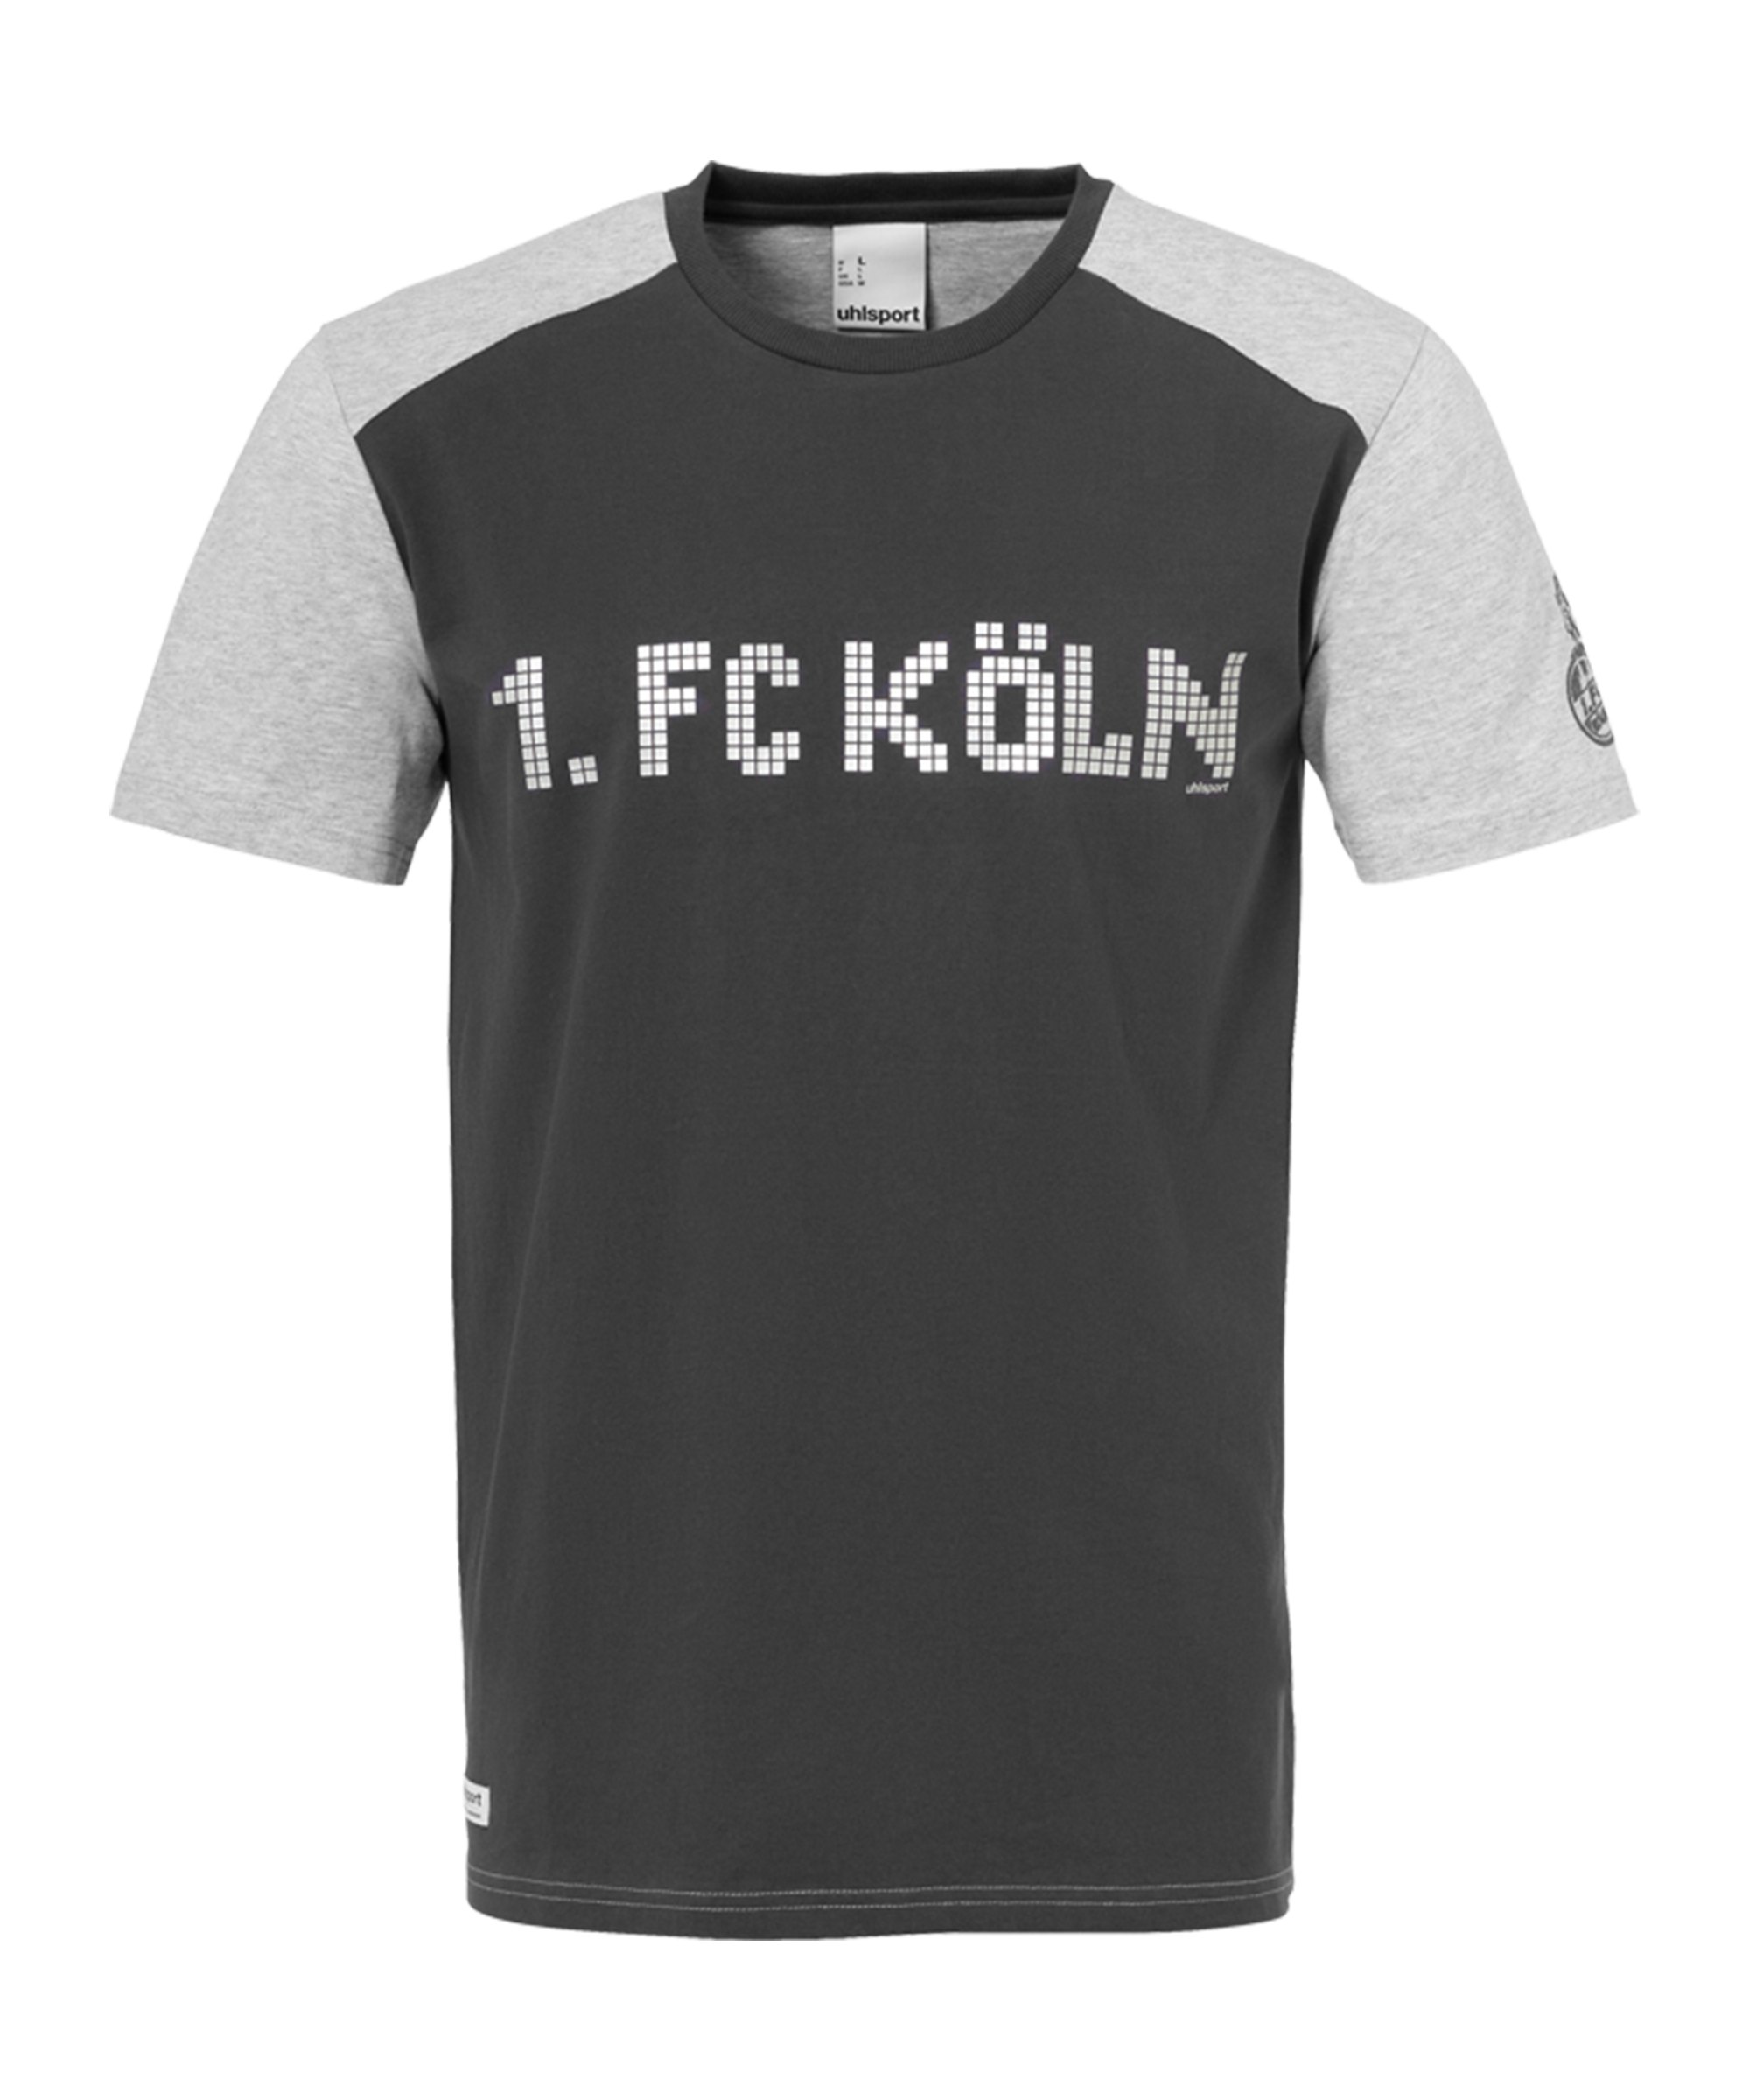 Uhlsport 1. FC Köln Pixels T-Shirt Grau - grau